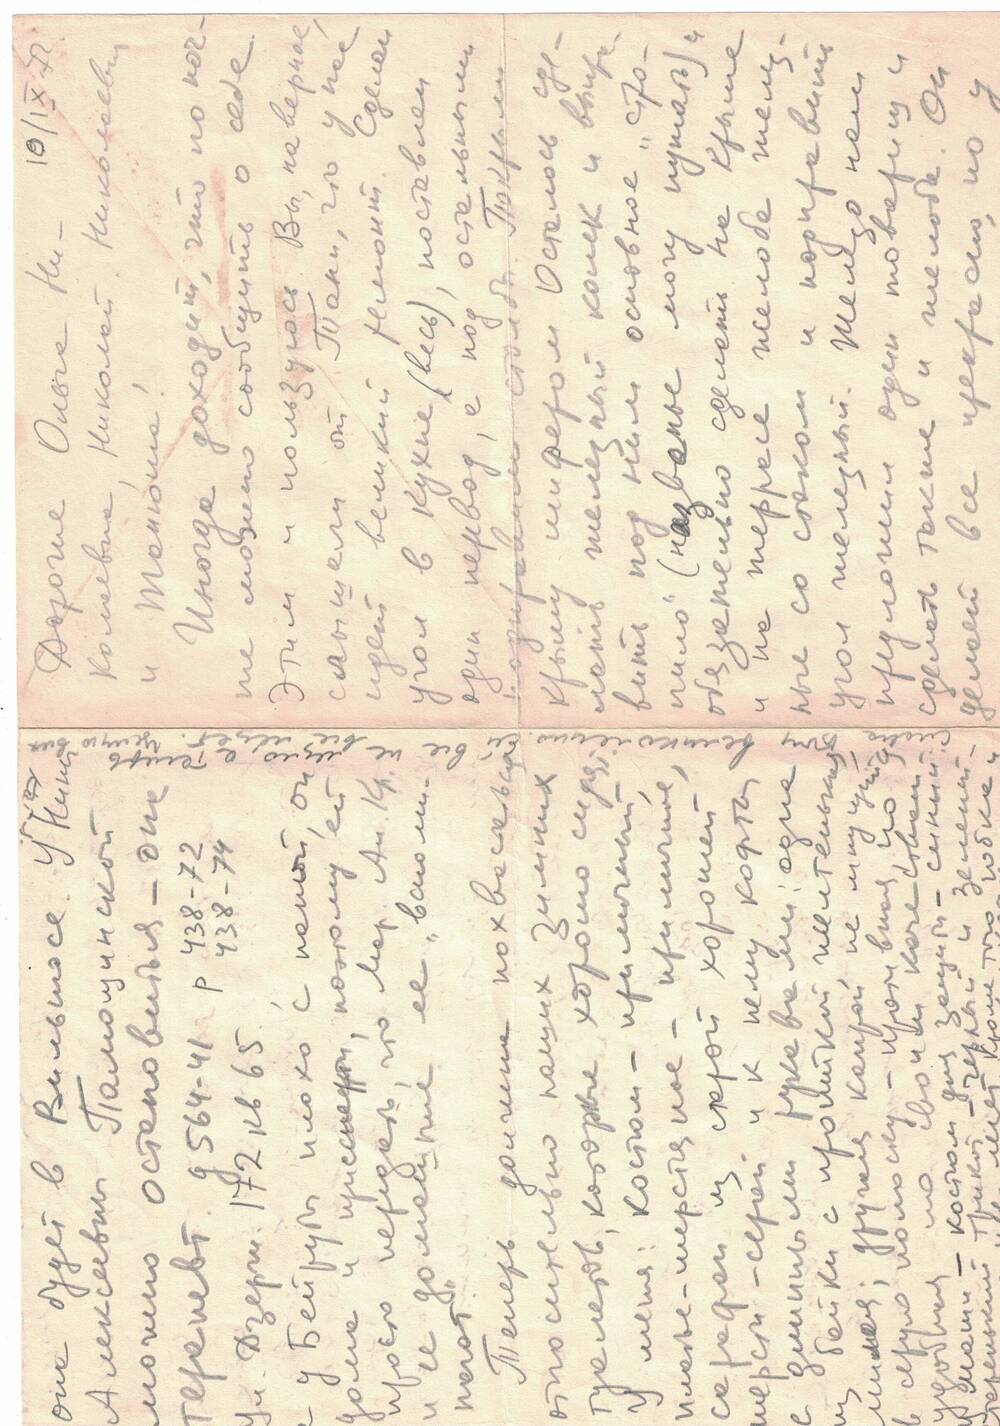 Письмо в конверте на имя Павловой Т.Н.